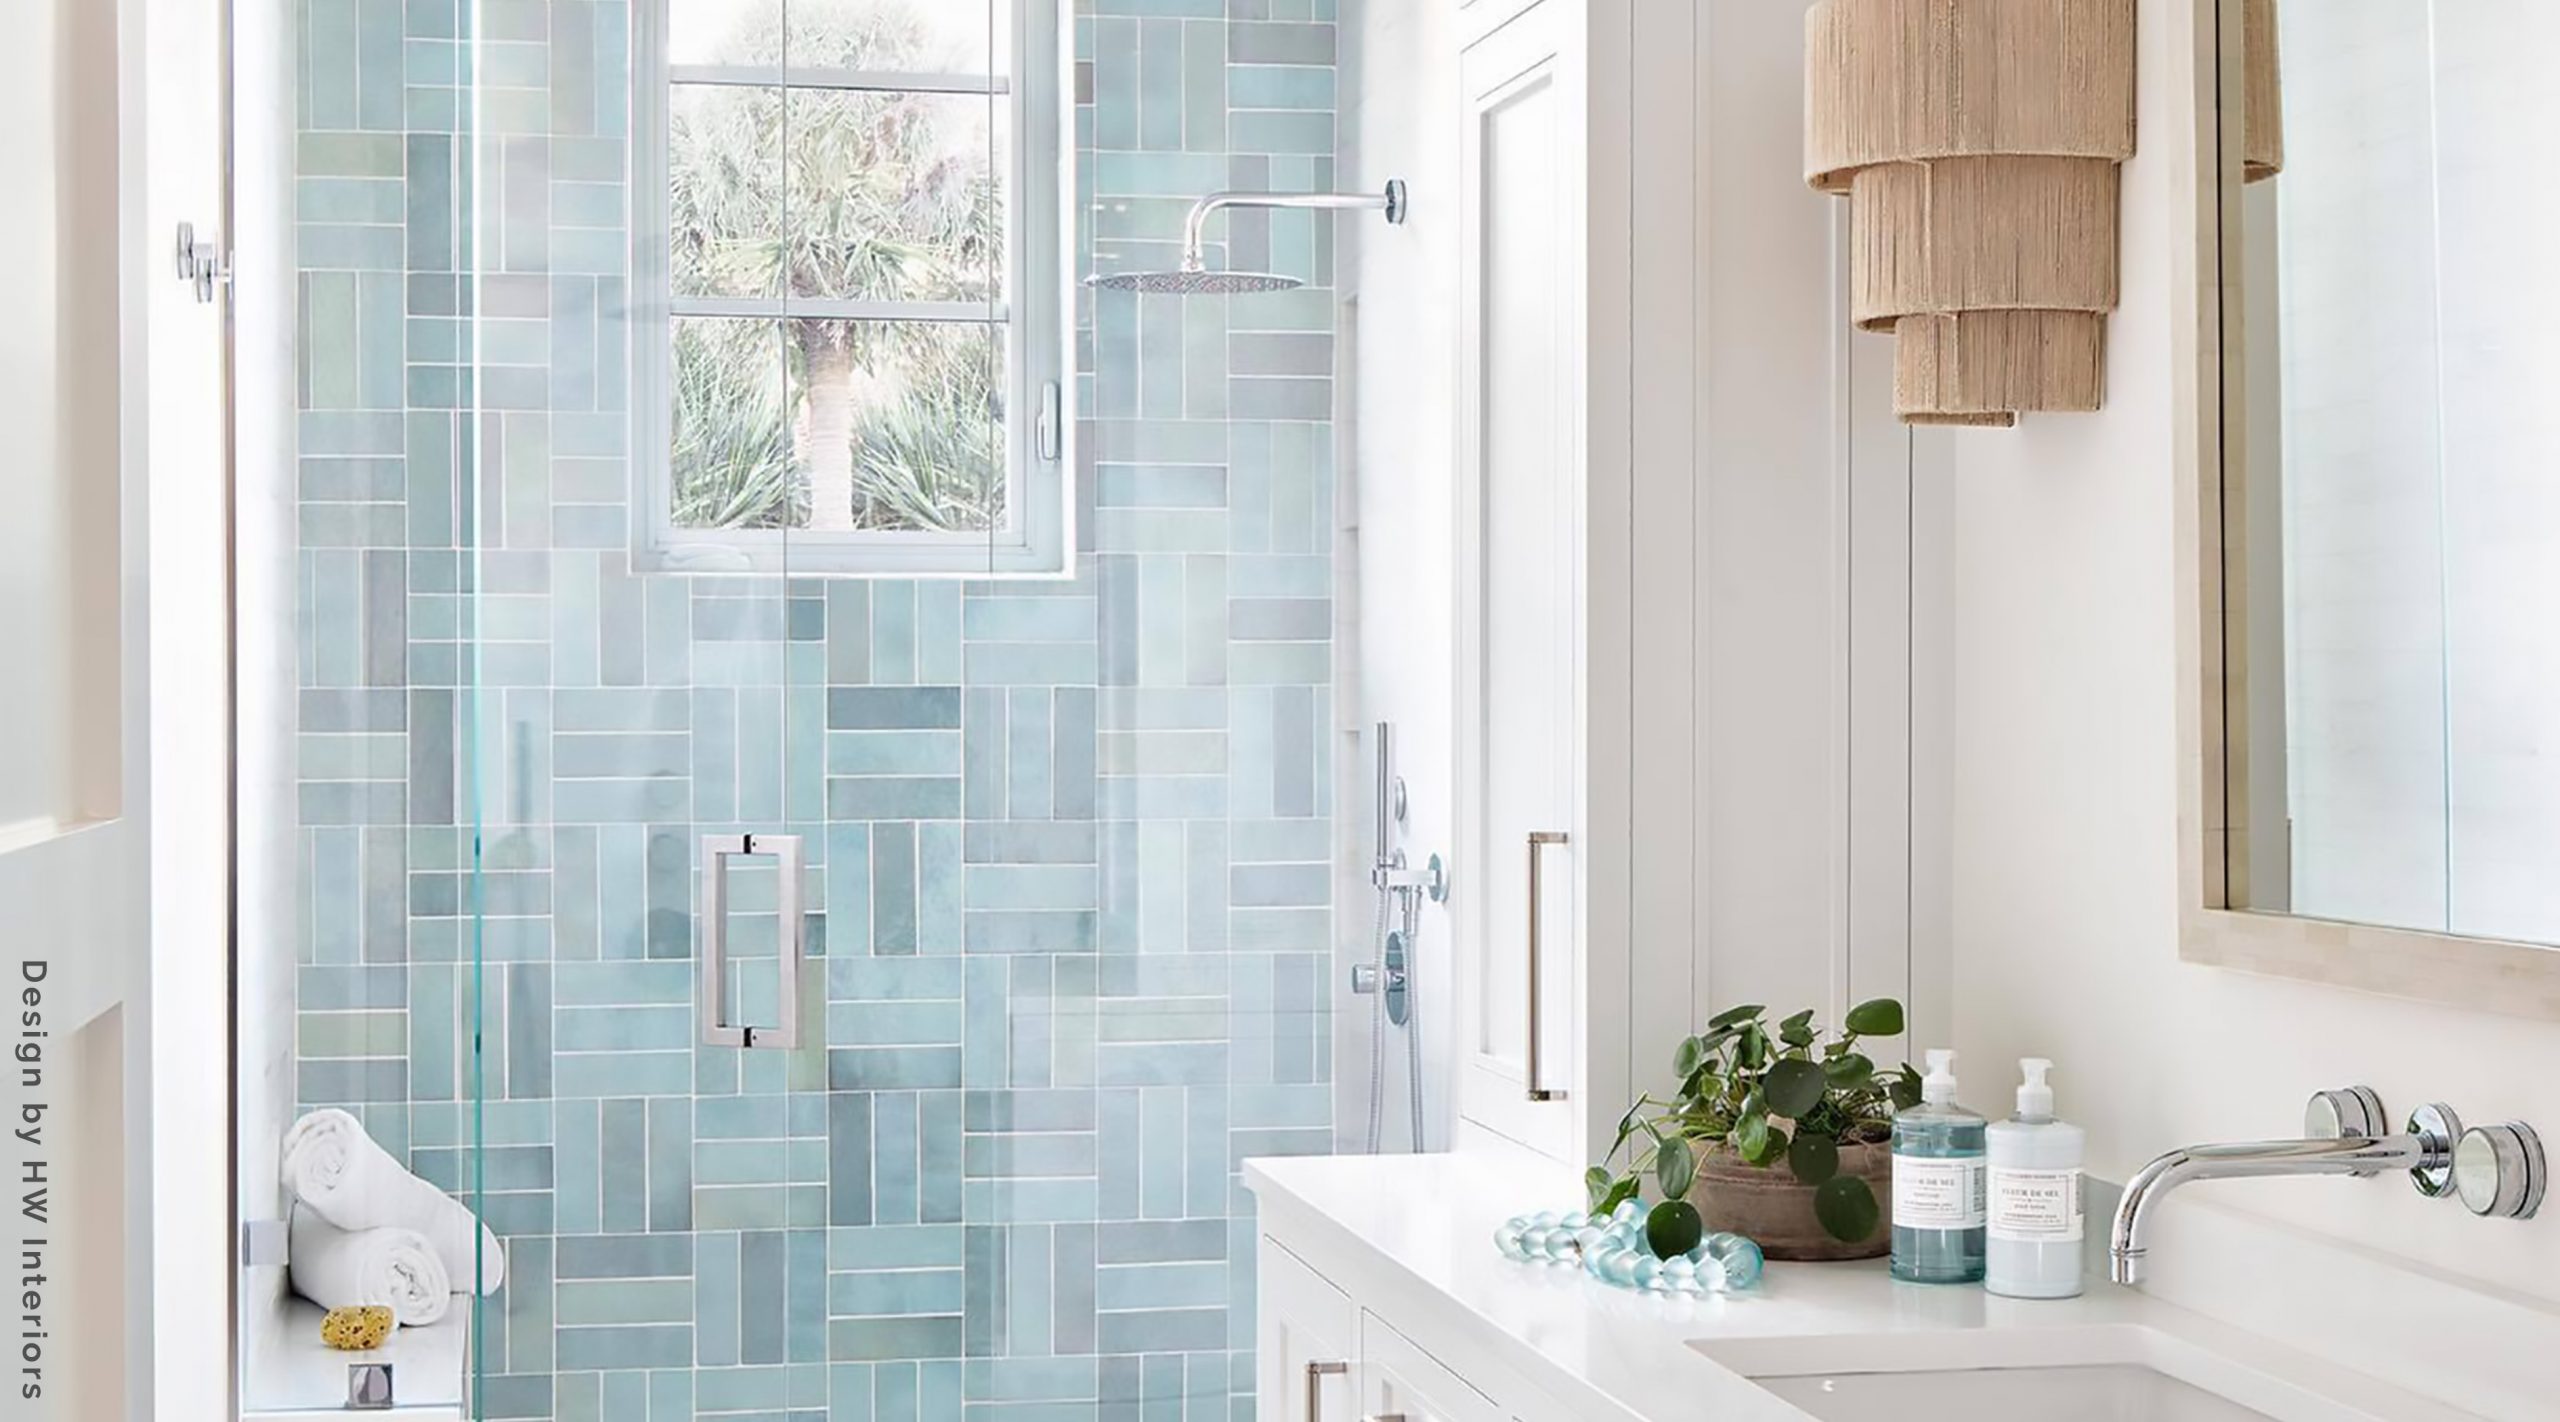 How to Choose Shower Tile - Best Tiles for Shower Floors & Walls